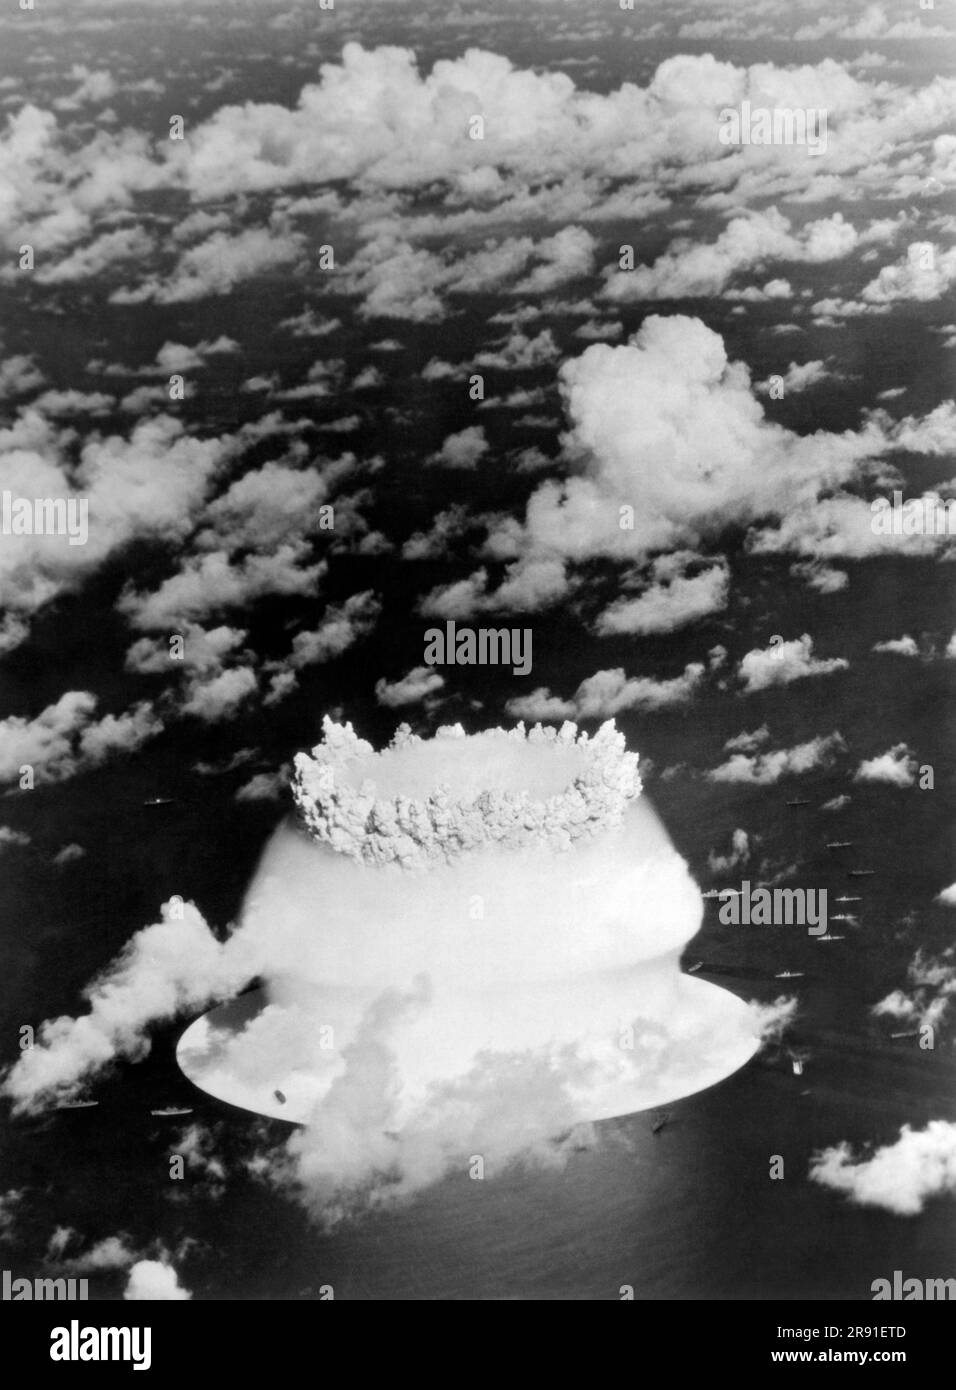 Bikini-Atoll, Marshallinseln, 24. Juli 1946 die Musroom-Anfänge aus der Baker-Atombombe, die während der Operation Crossroads-Tests über der Bikini-Lagune explodierte. Stockfoto